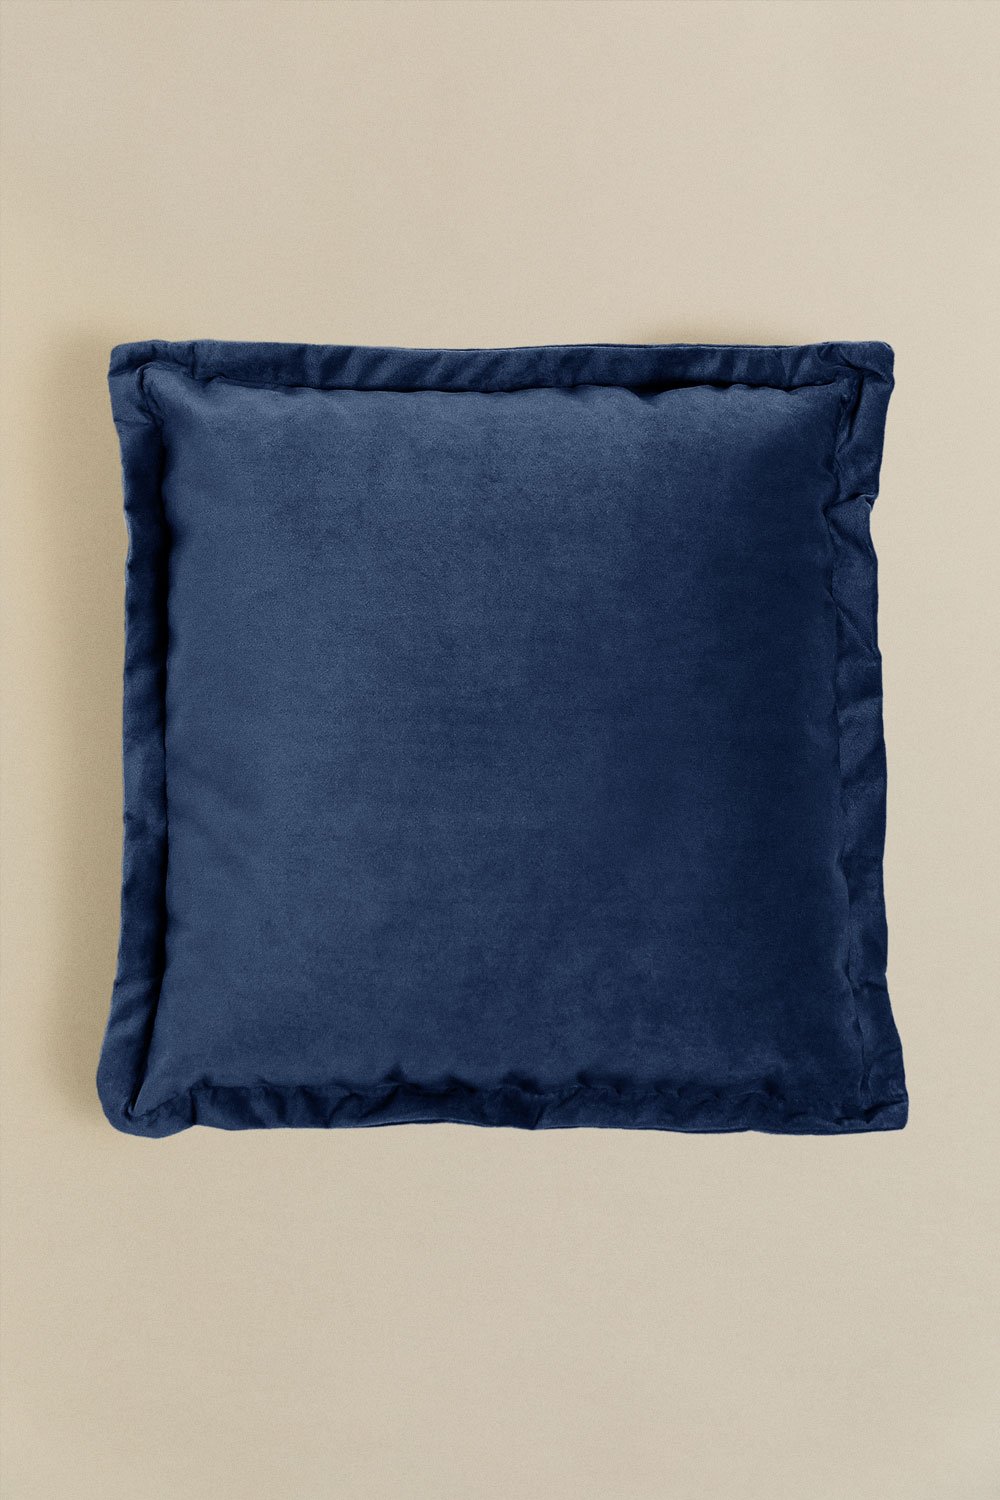 Cuscino quadrato in velluto (53x53 cm) Kata, immagine della galleria 1